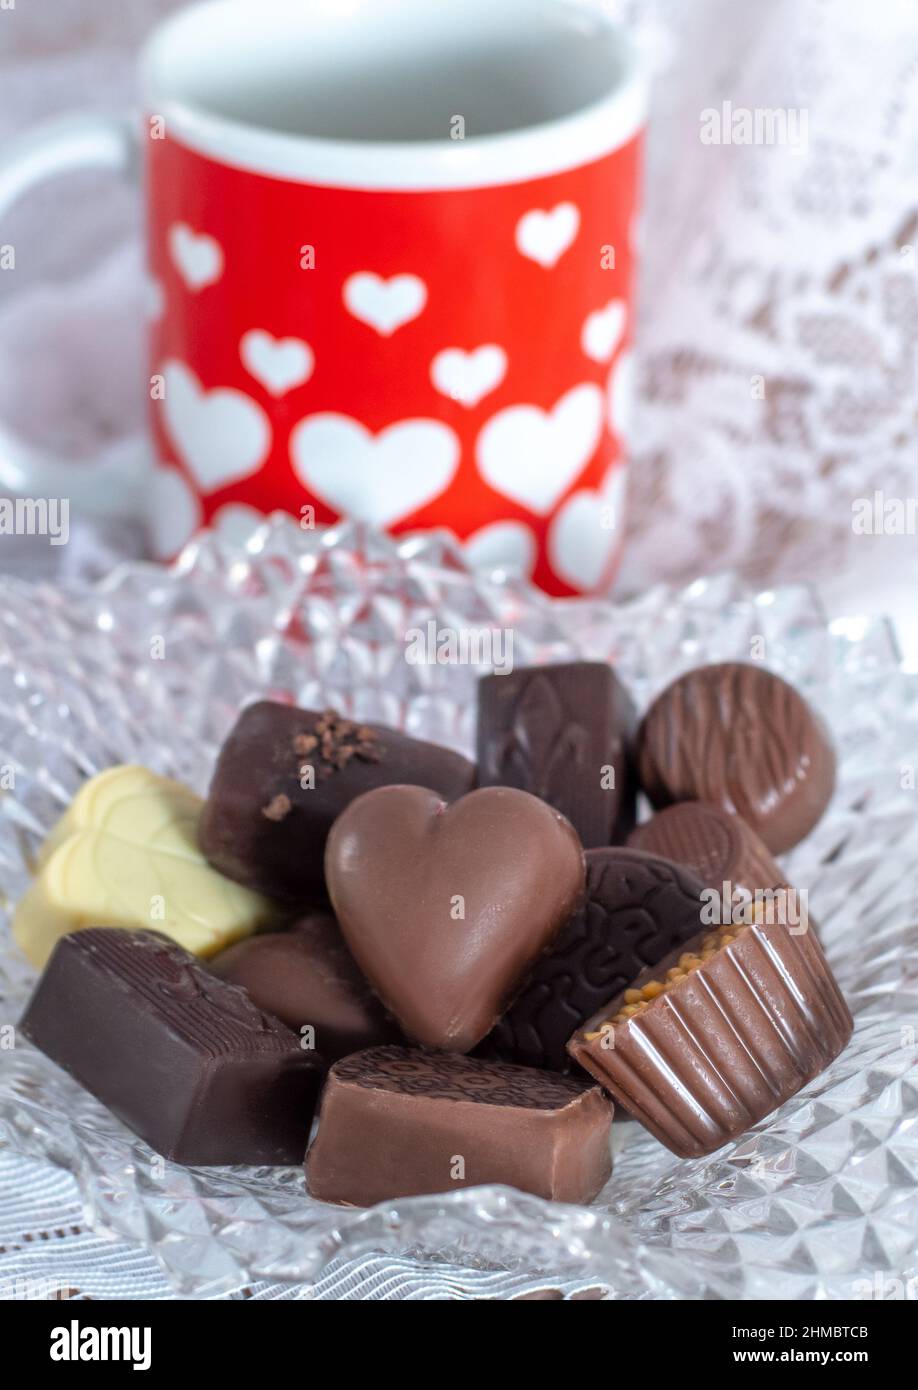 Un piatto di caramelle fantasia contiene cioccolatini gourmet per il vostro valentine, e una tazza graziosa rossa e bianca con cuori vi mostrano la cura Foto Stock